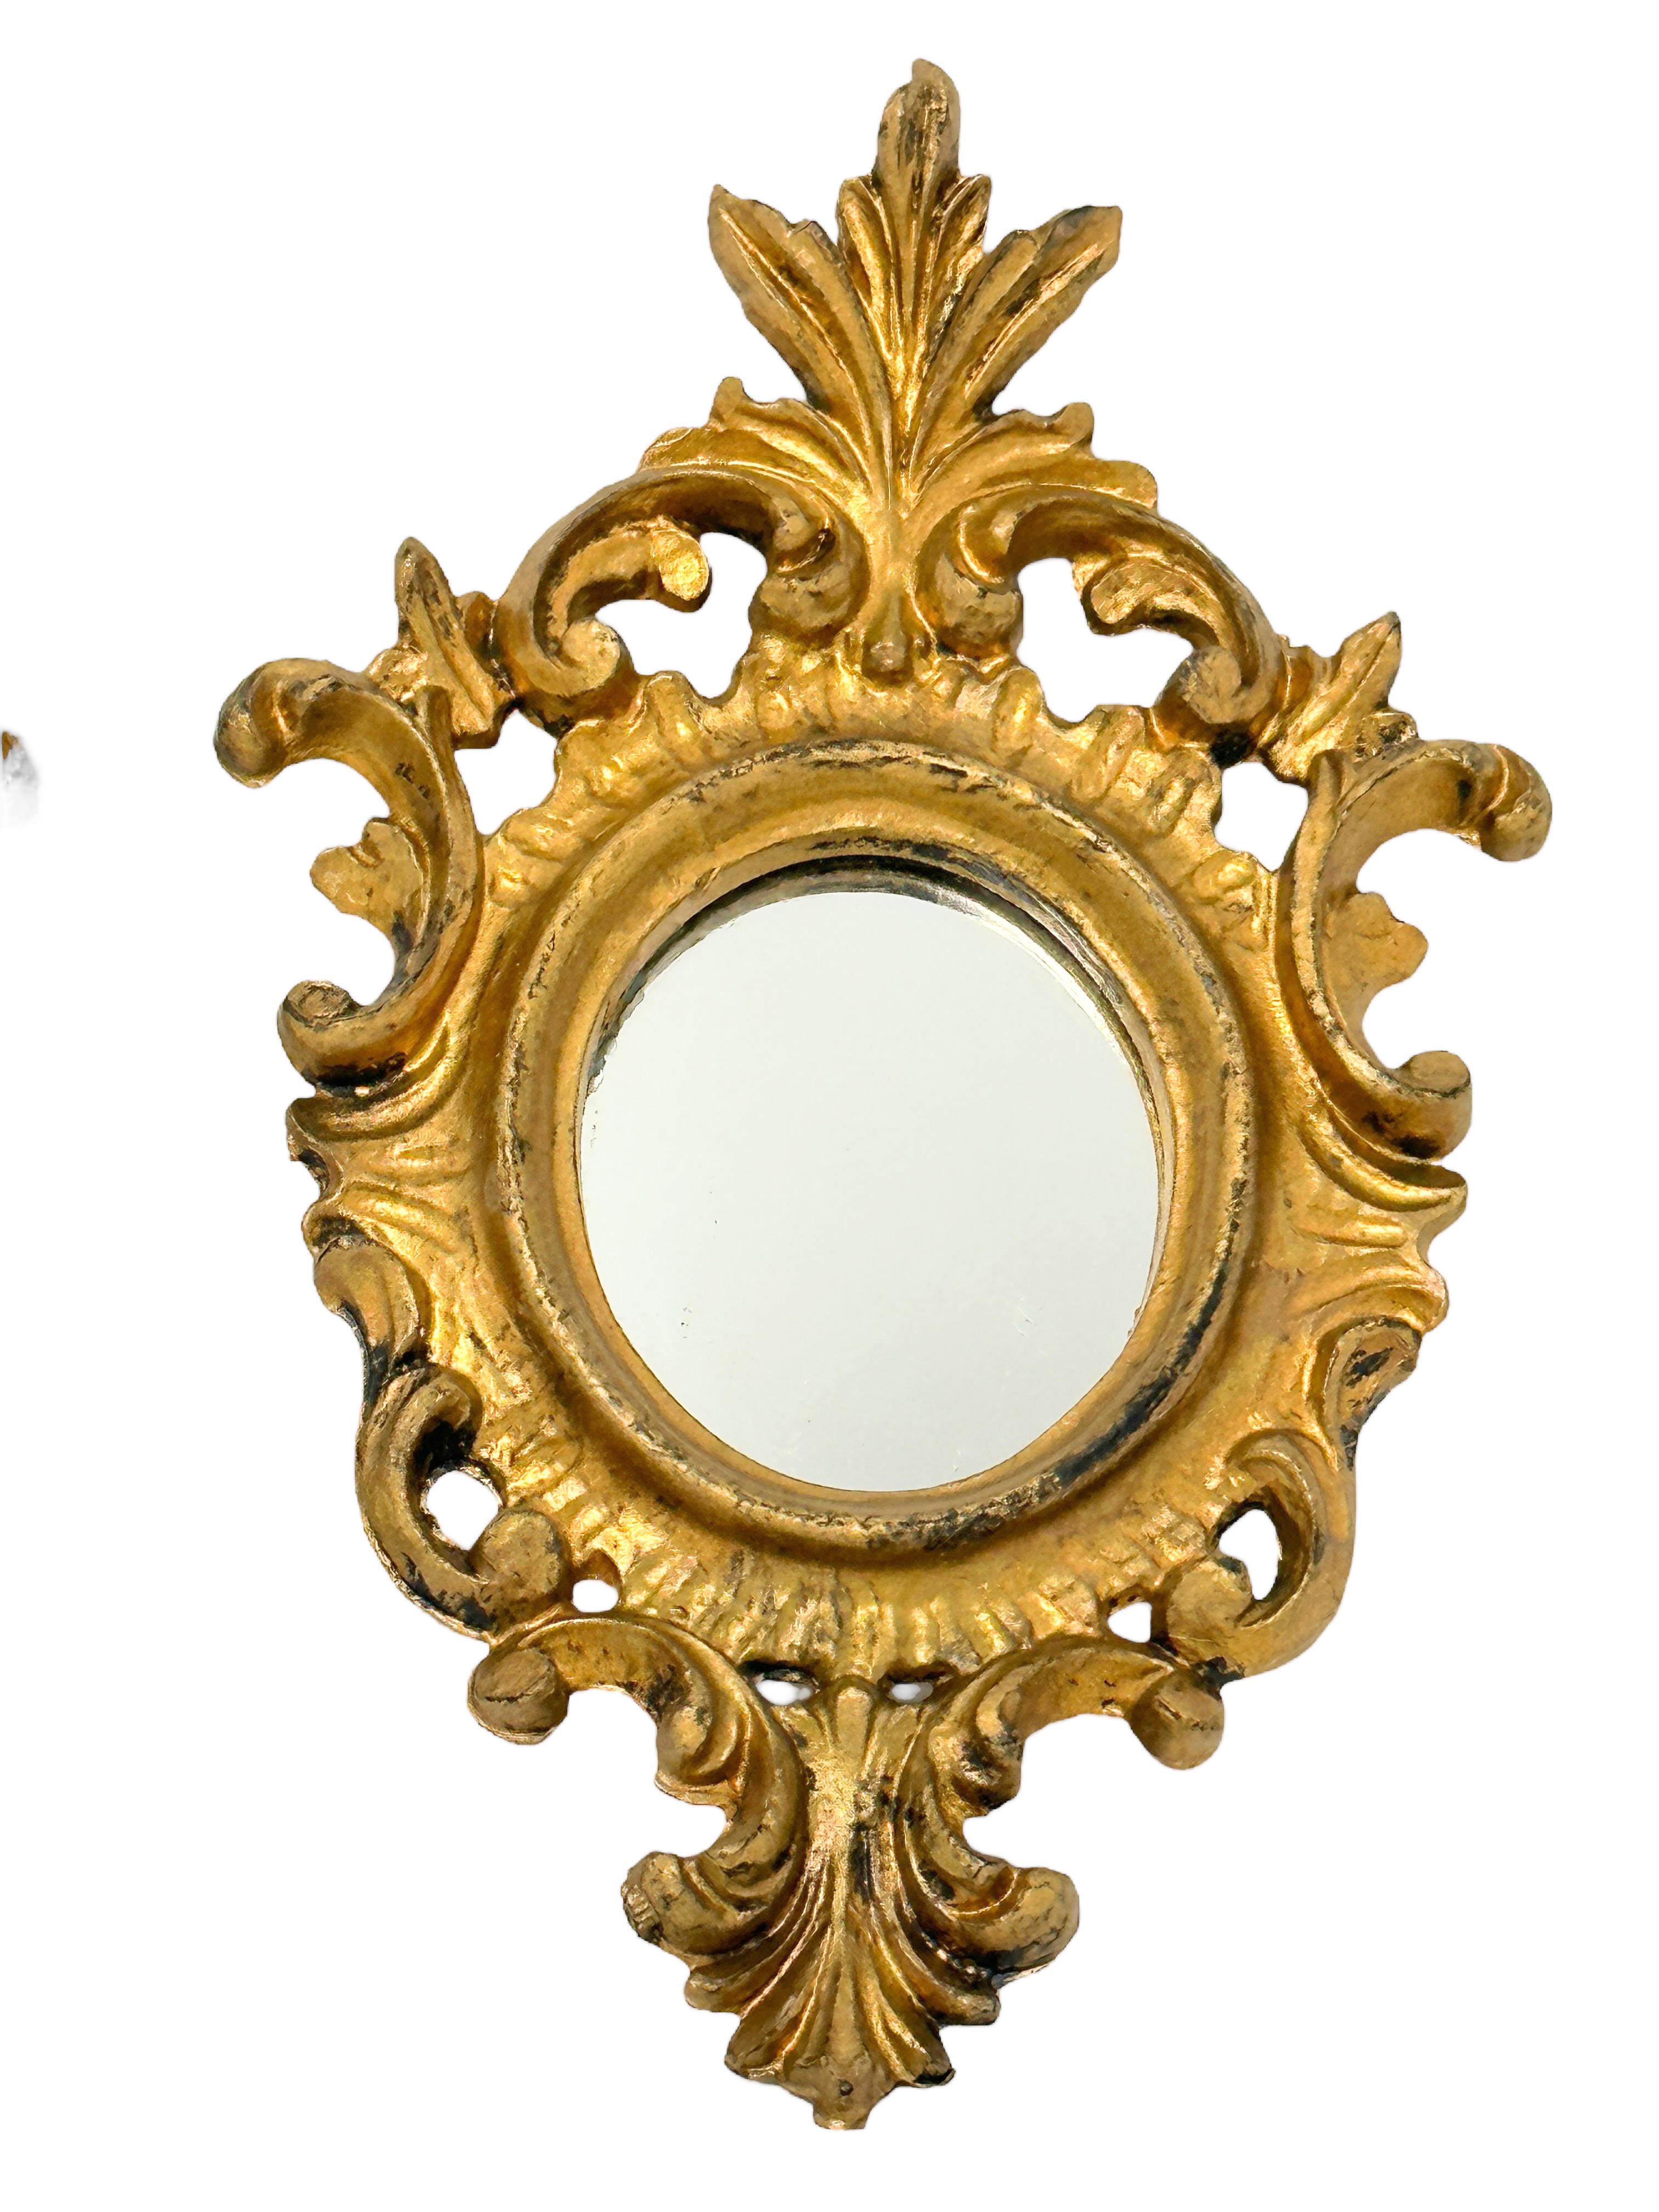 Italian Pair of Hollywood Regency Gilded Tole Toleware Vanity Mirror Vintage Italy 1950s